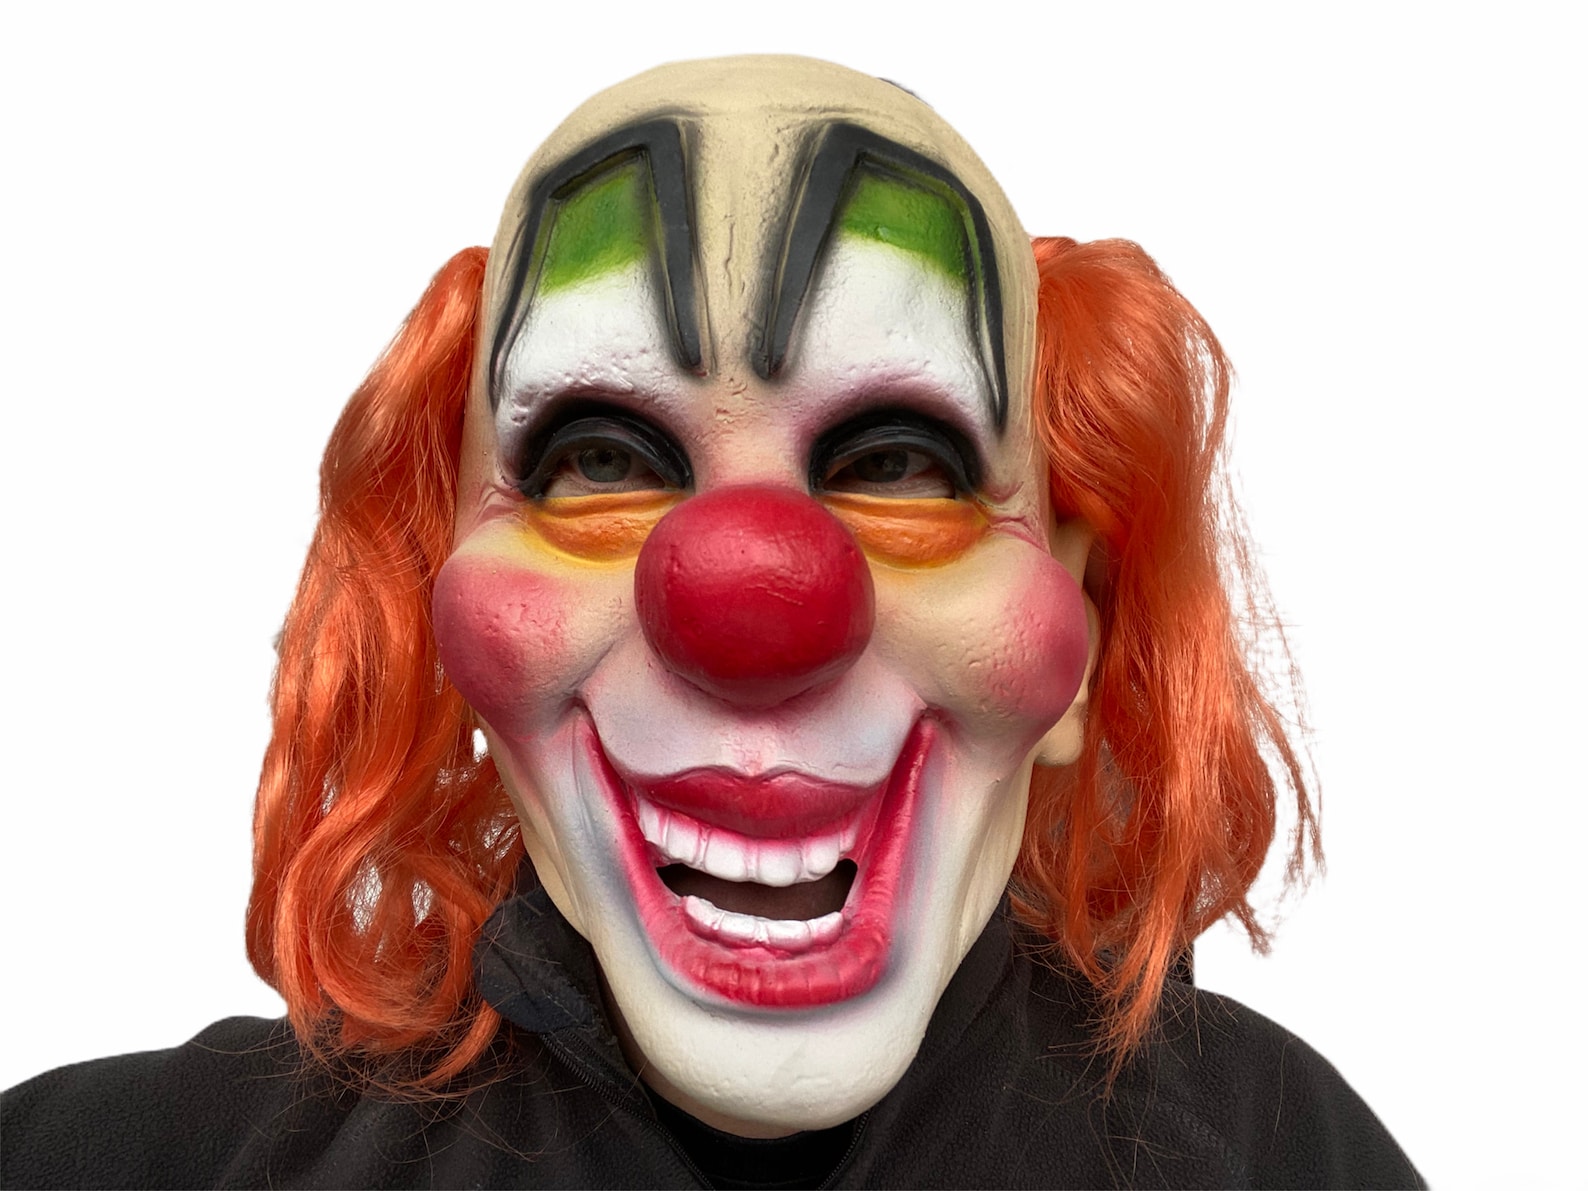 Blue Hair Clown Mask - wide 8